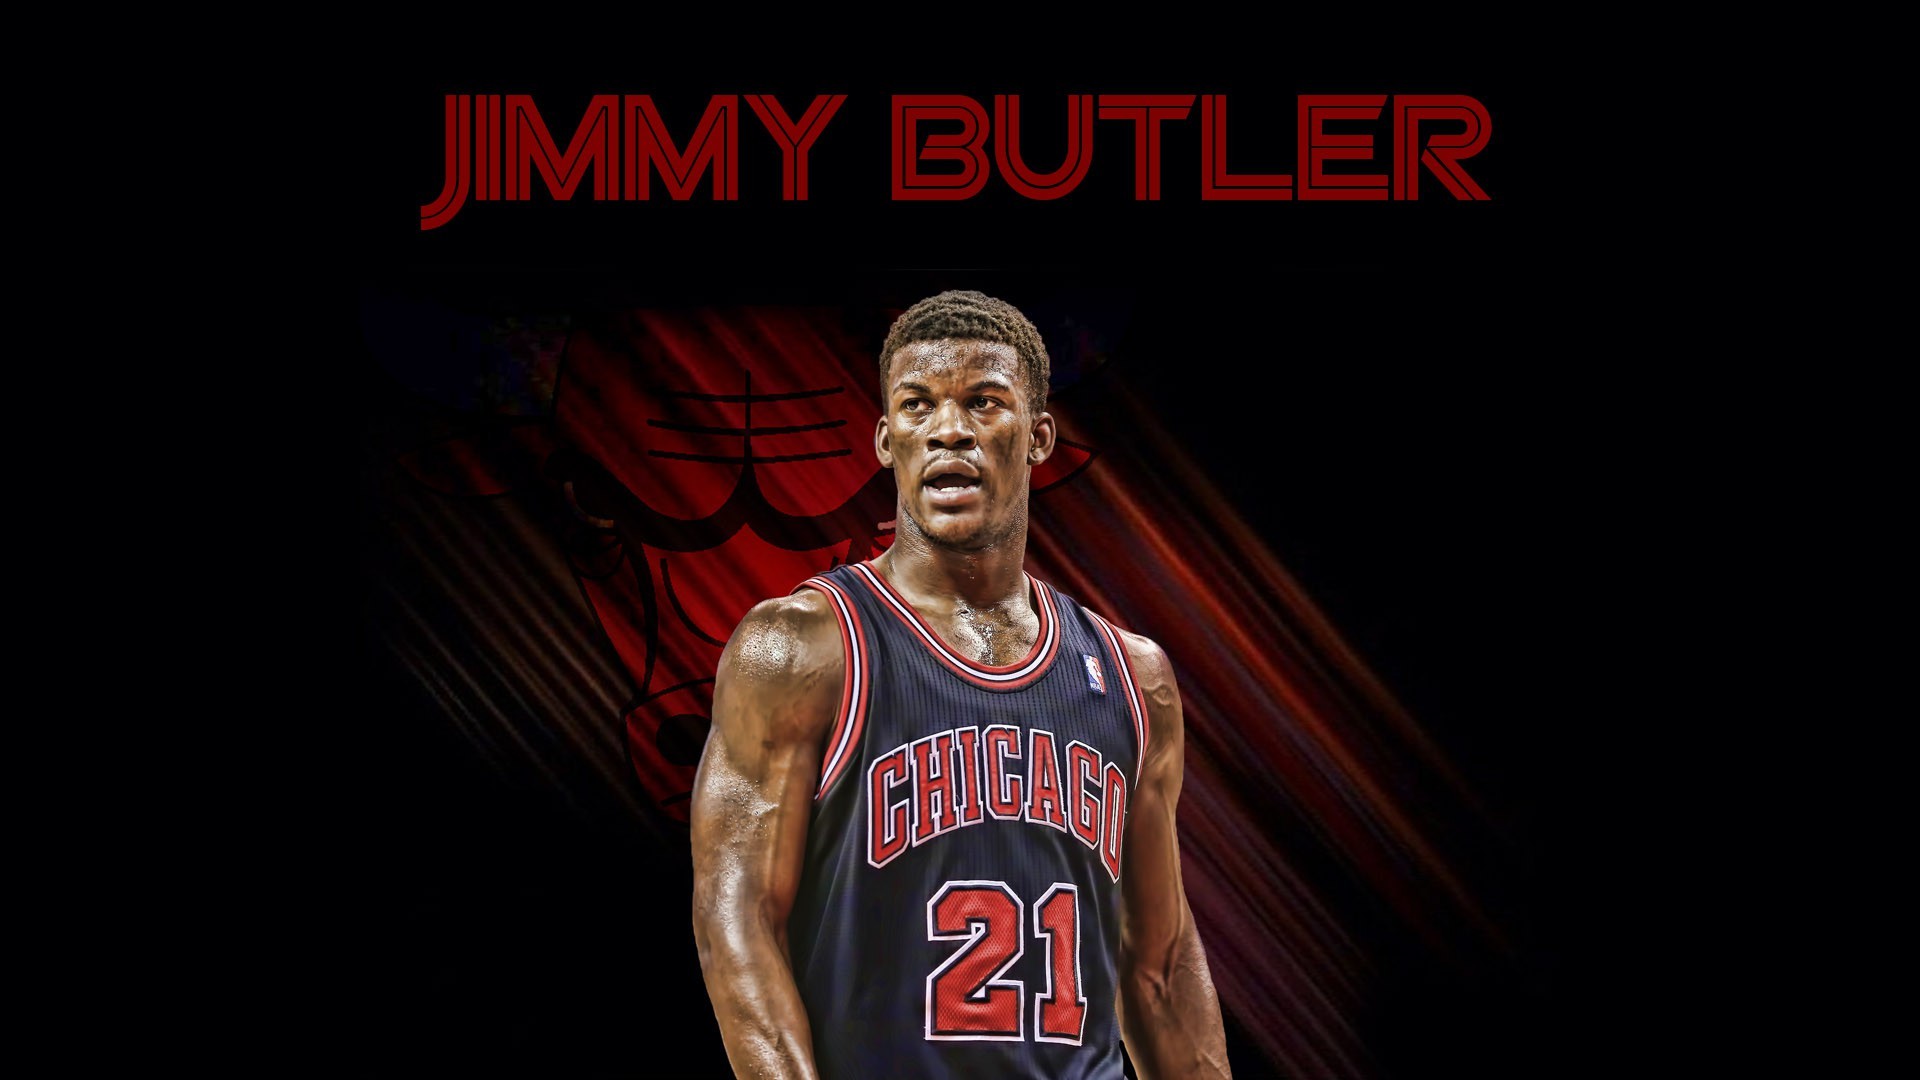 1920x1080 Jimmy Butler Chicago Bulls Wallpaper.